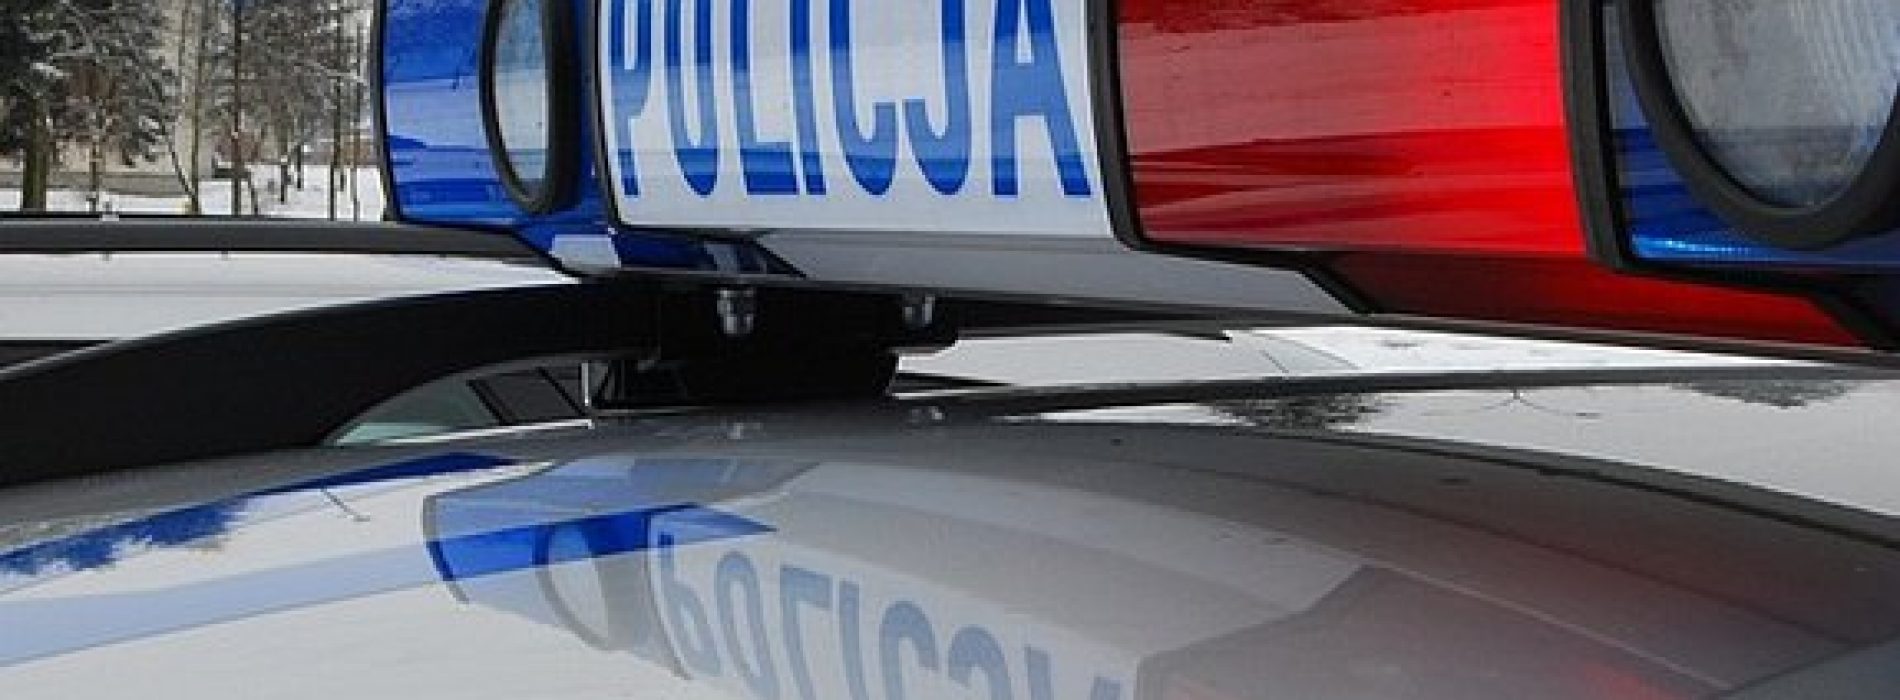 39-letni sprawca śmiertelnego potrącenia pieszej, który uciekł z miejsca wypadku, został zatrzymany w pościgu przez policjantów OPP w Krakowie